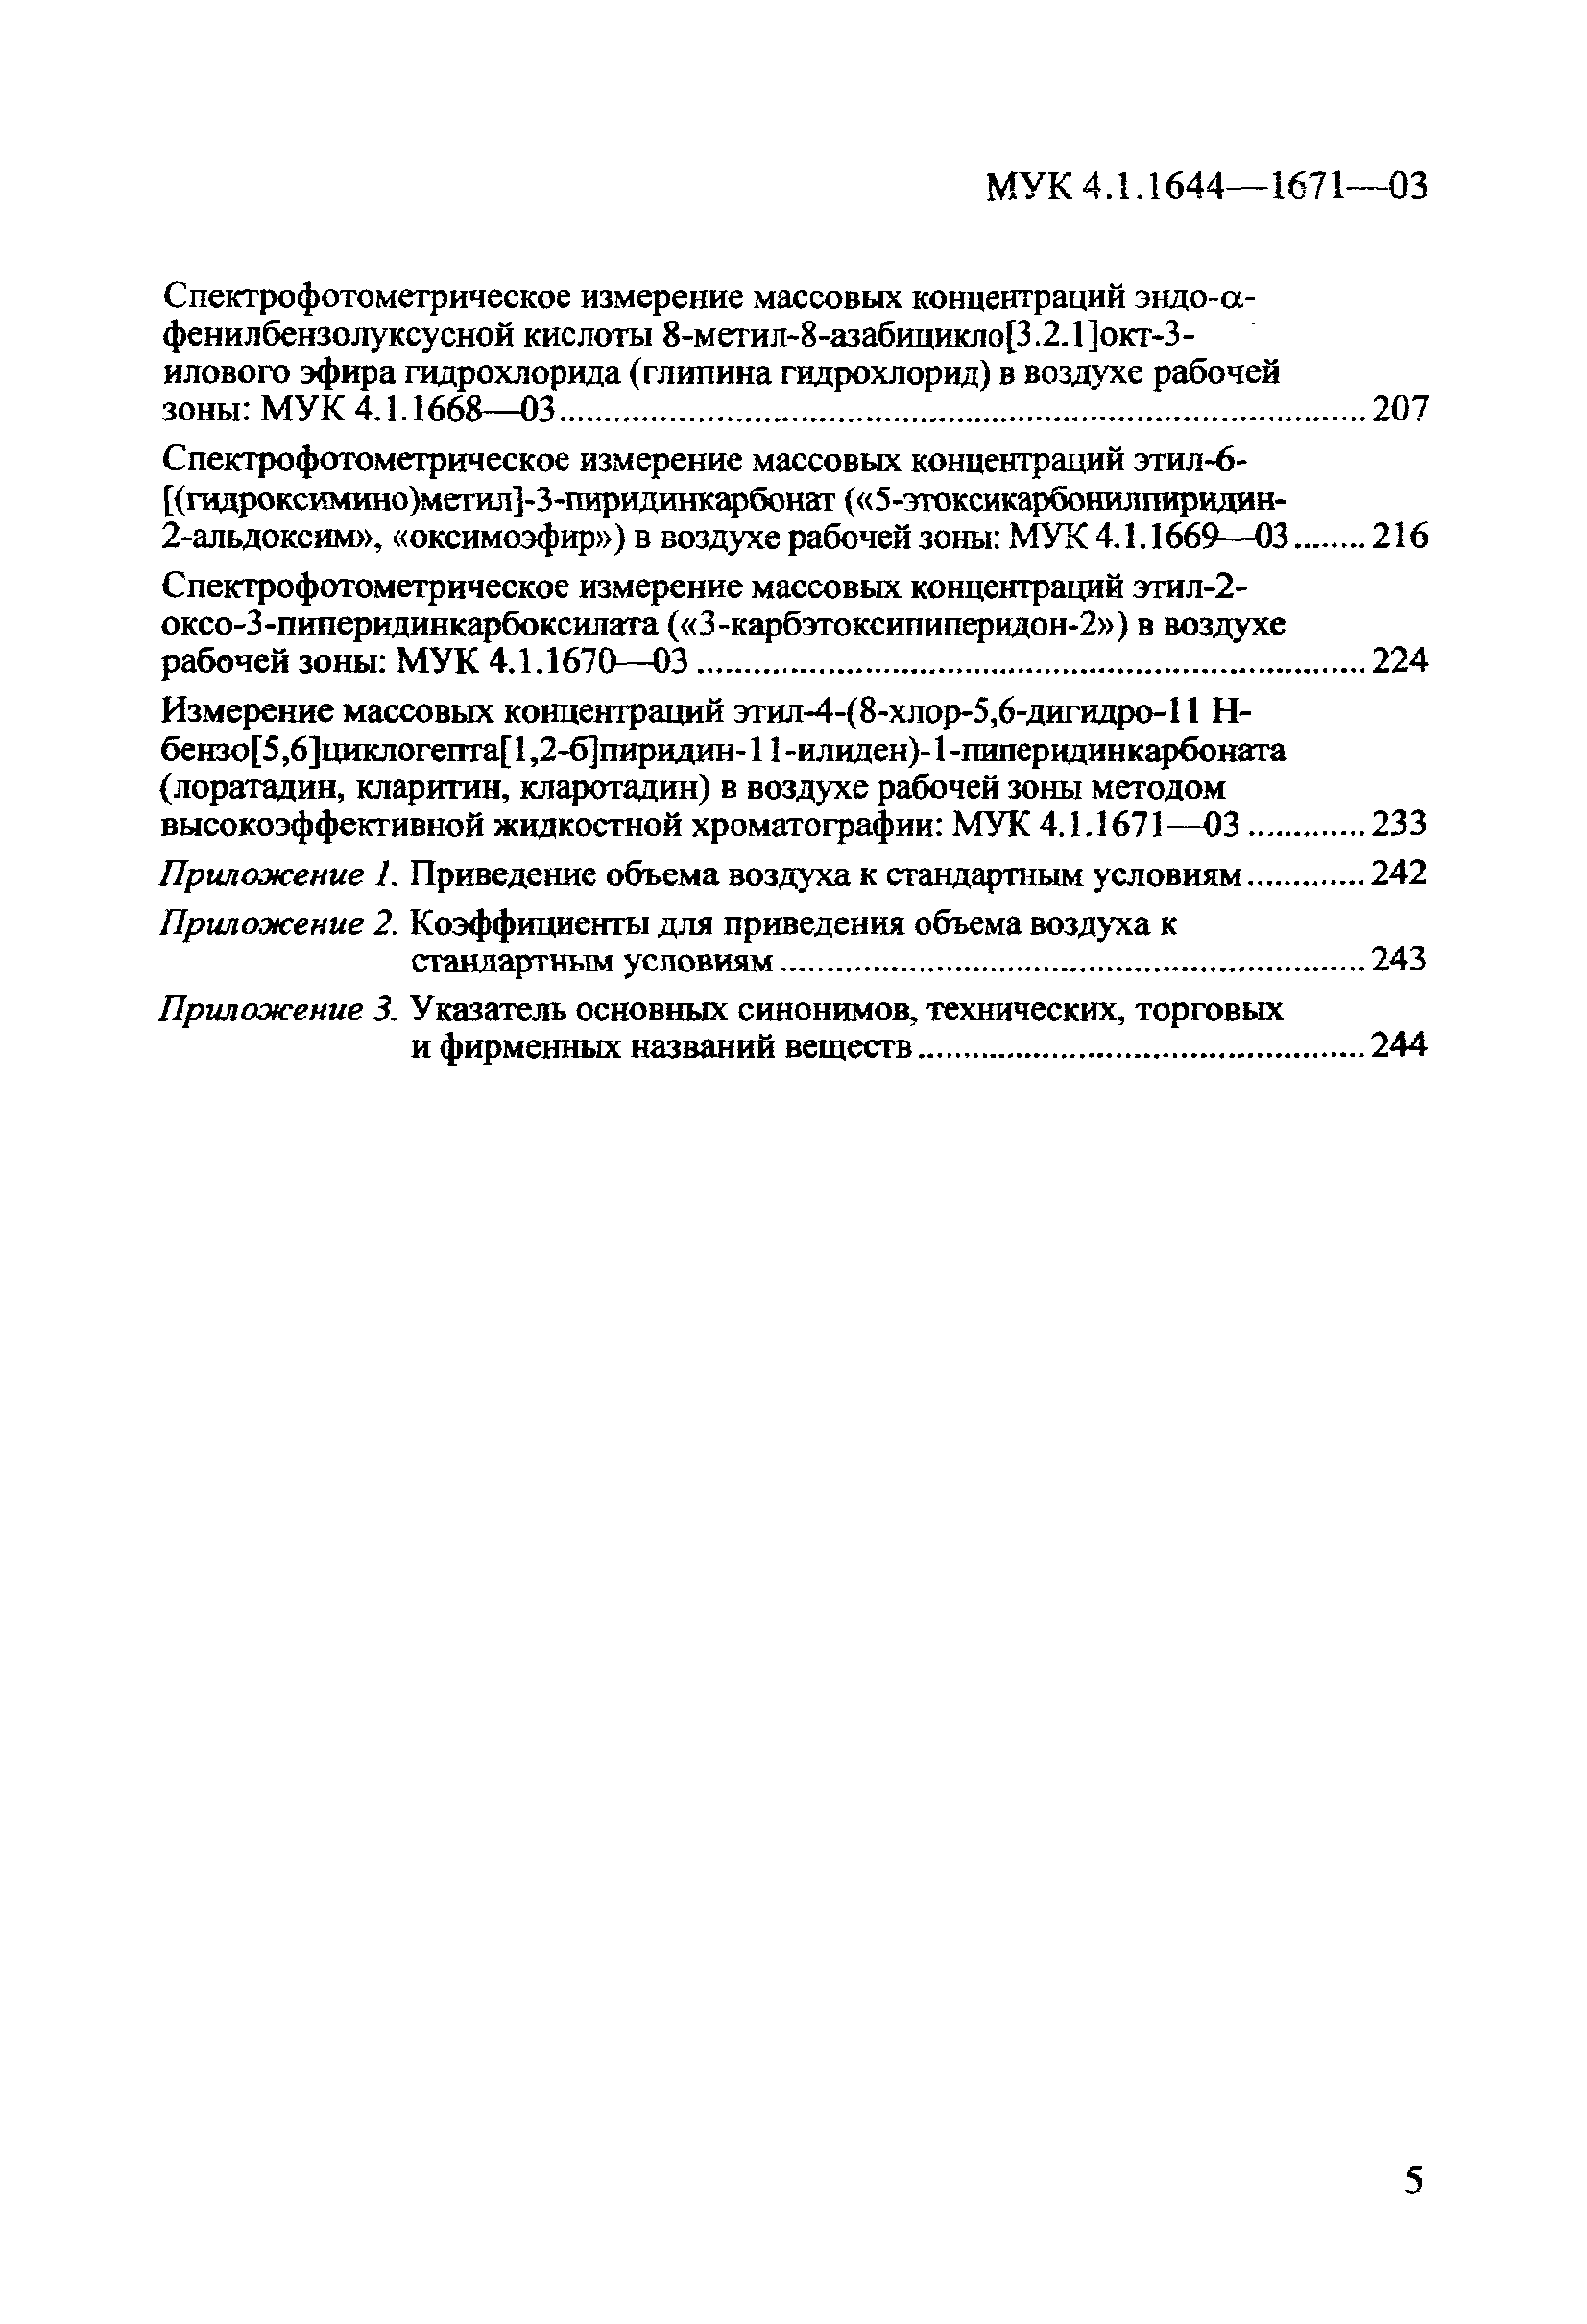 МУК 4.1.1671-03